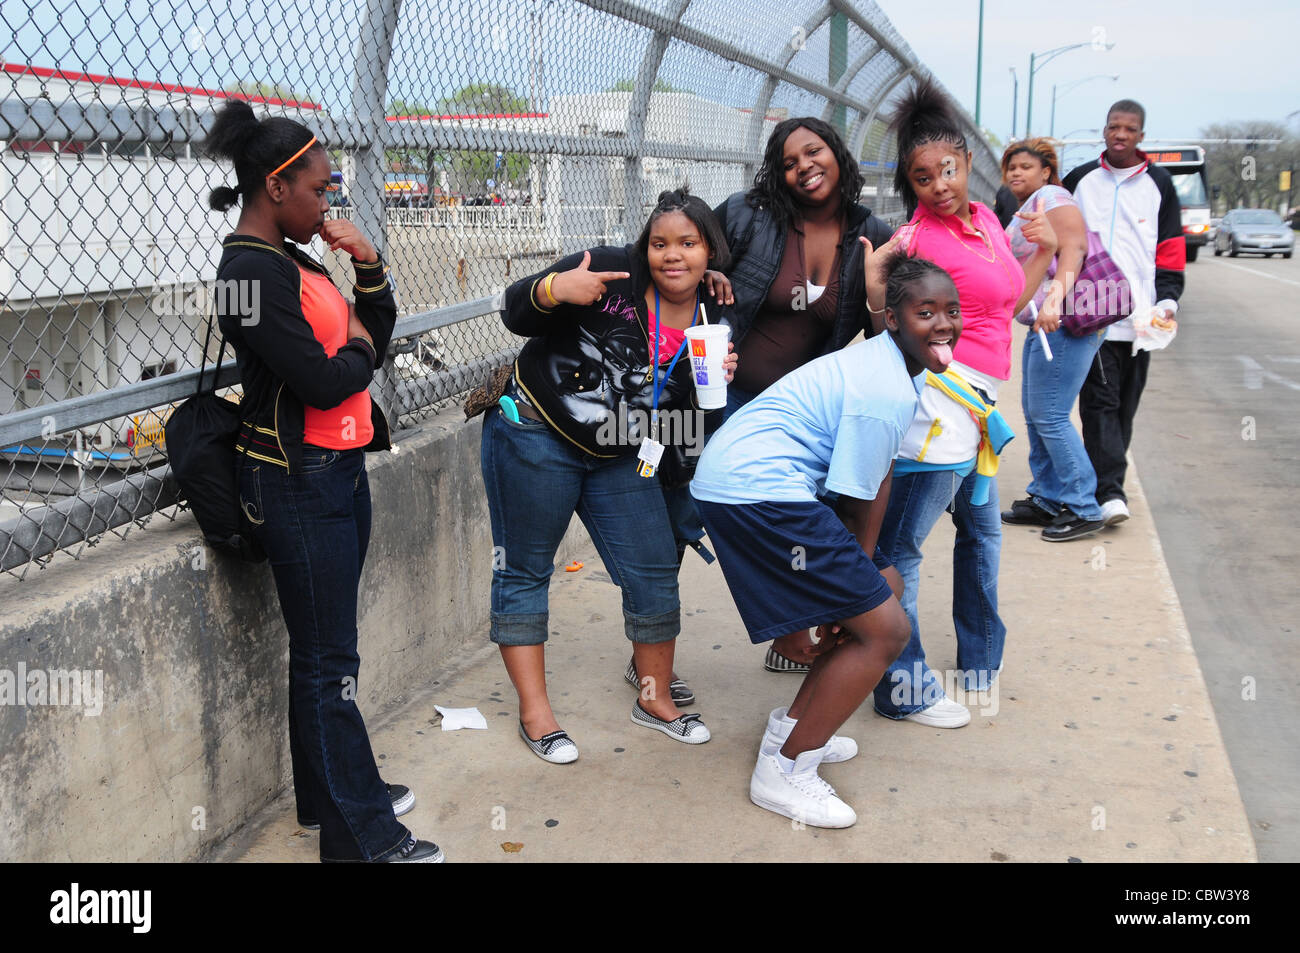 Los escolares en Dan Ryan viduct Chicago, Ill USA, negros, jóvenes, diversión, bromas Foto de stock